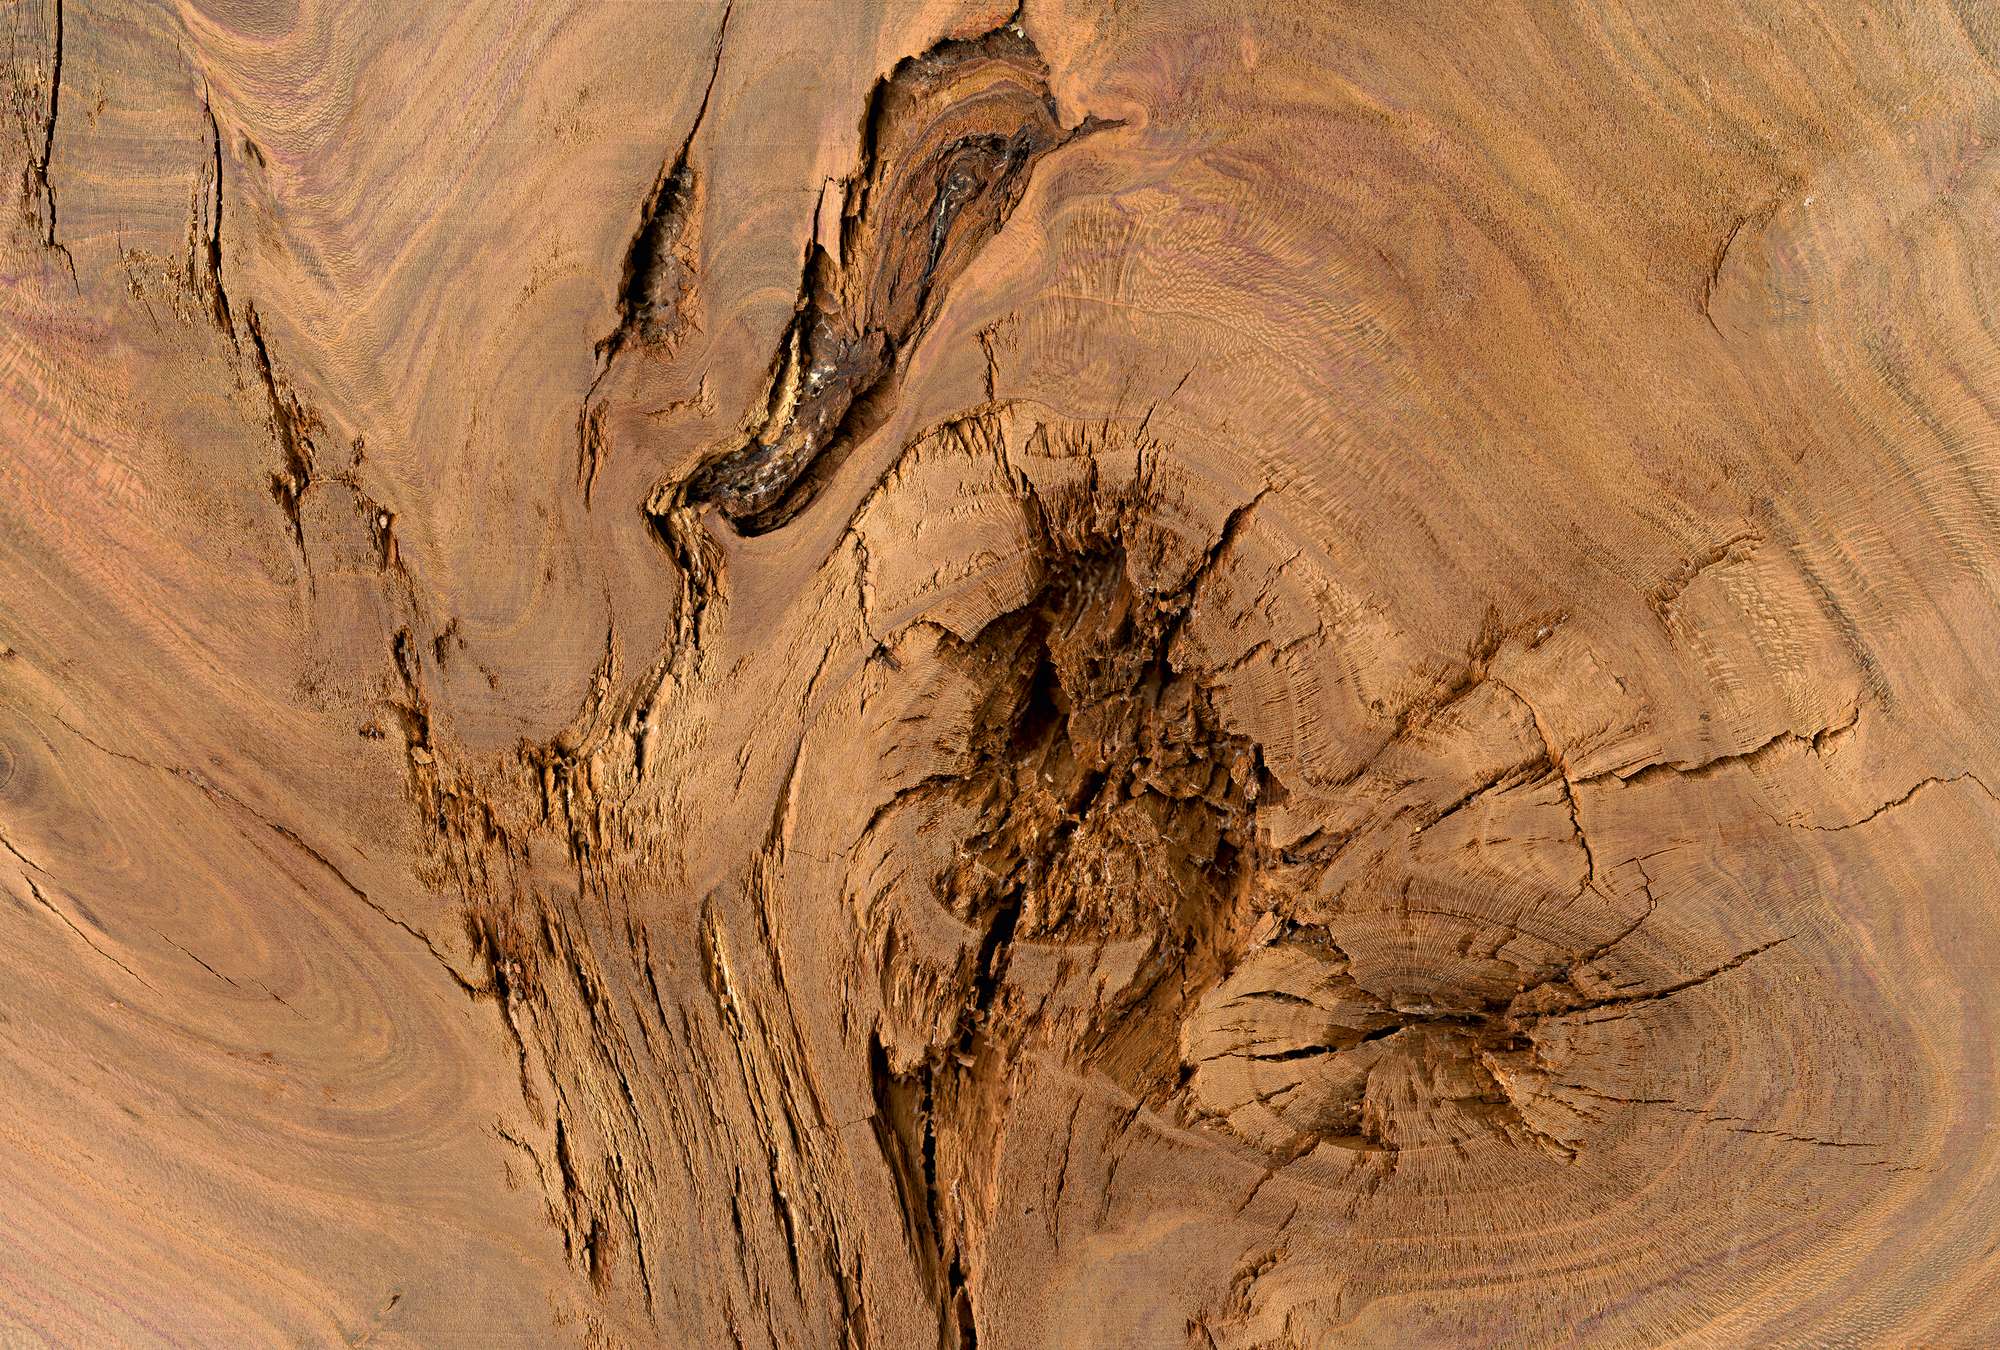             Detailaufnahme von einem Baumstamm – Eiche
        